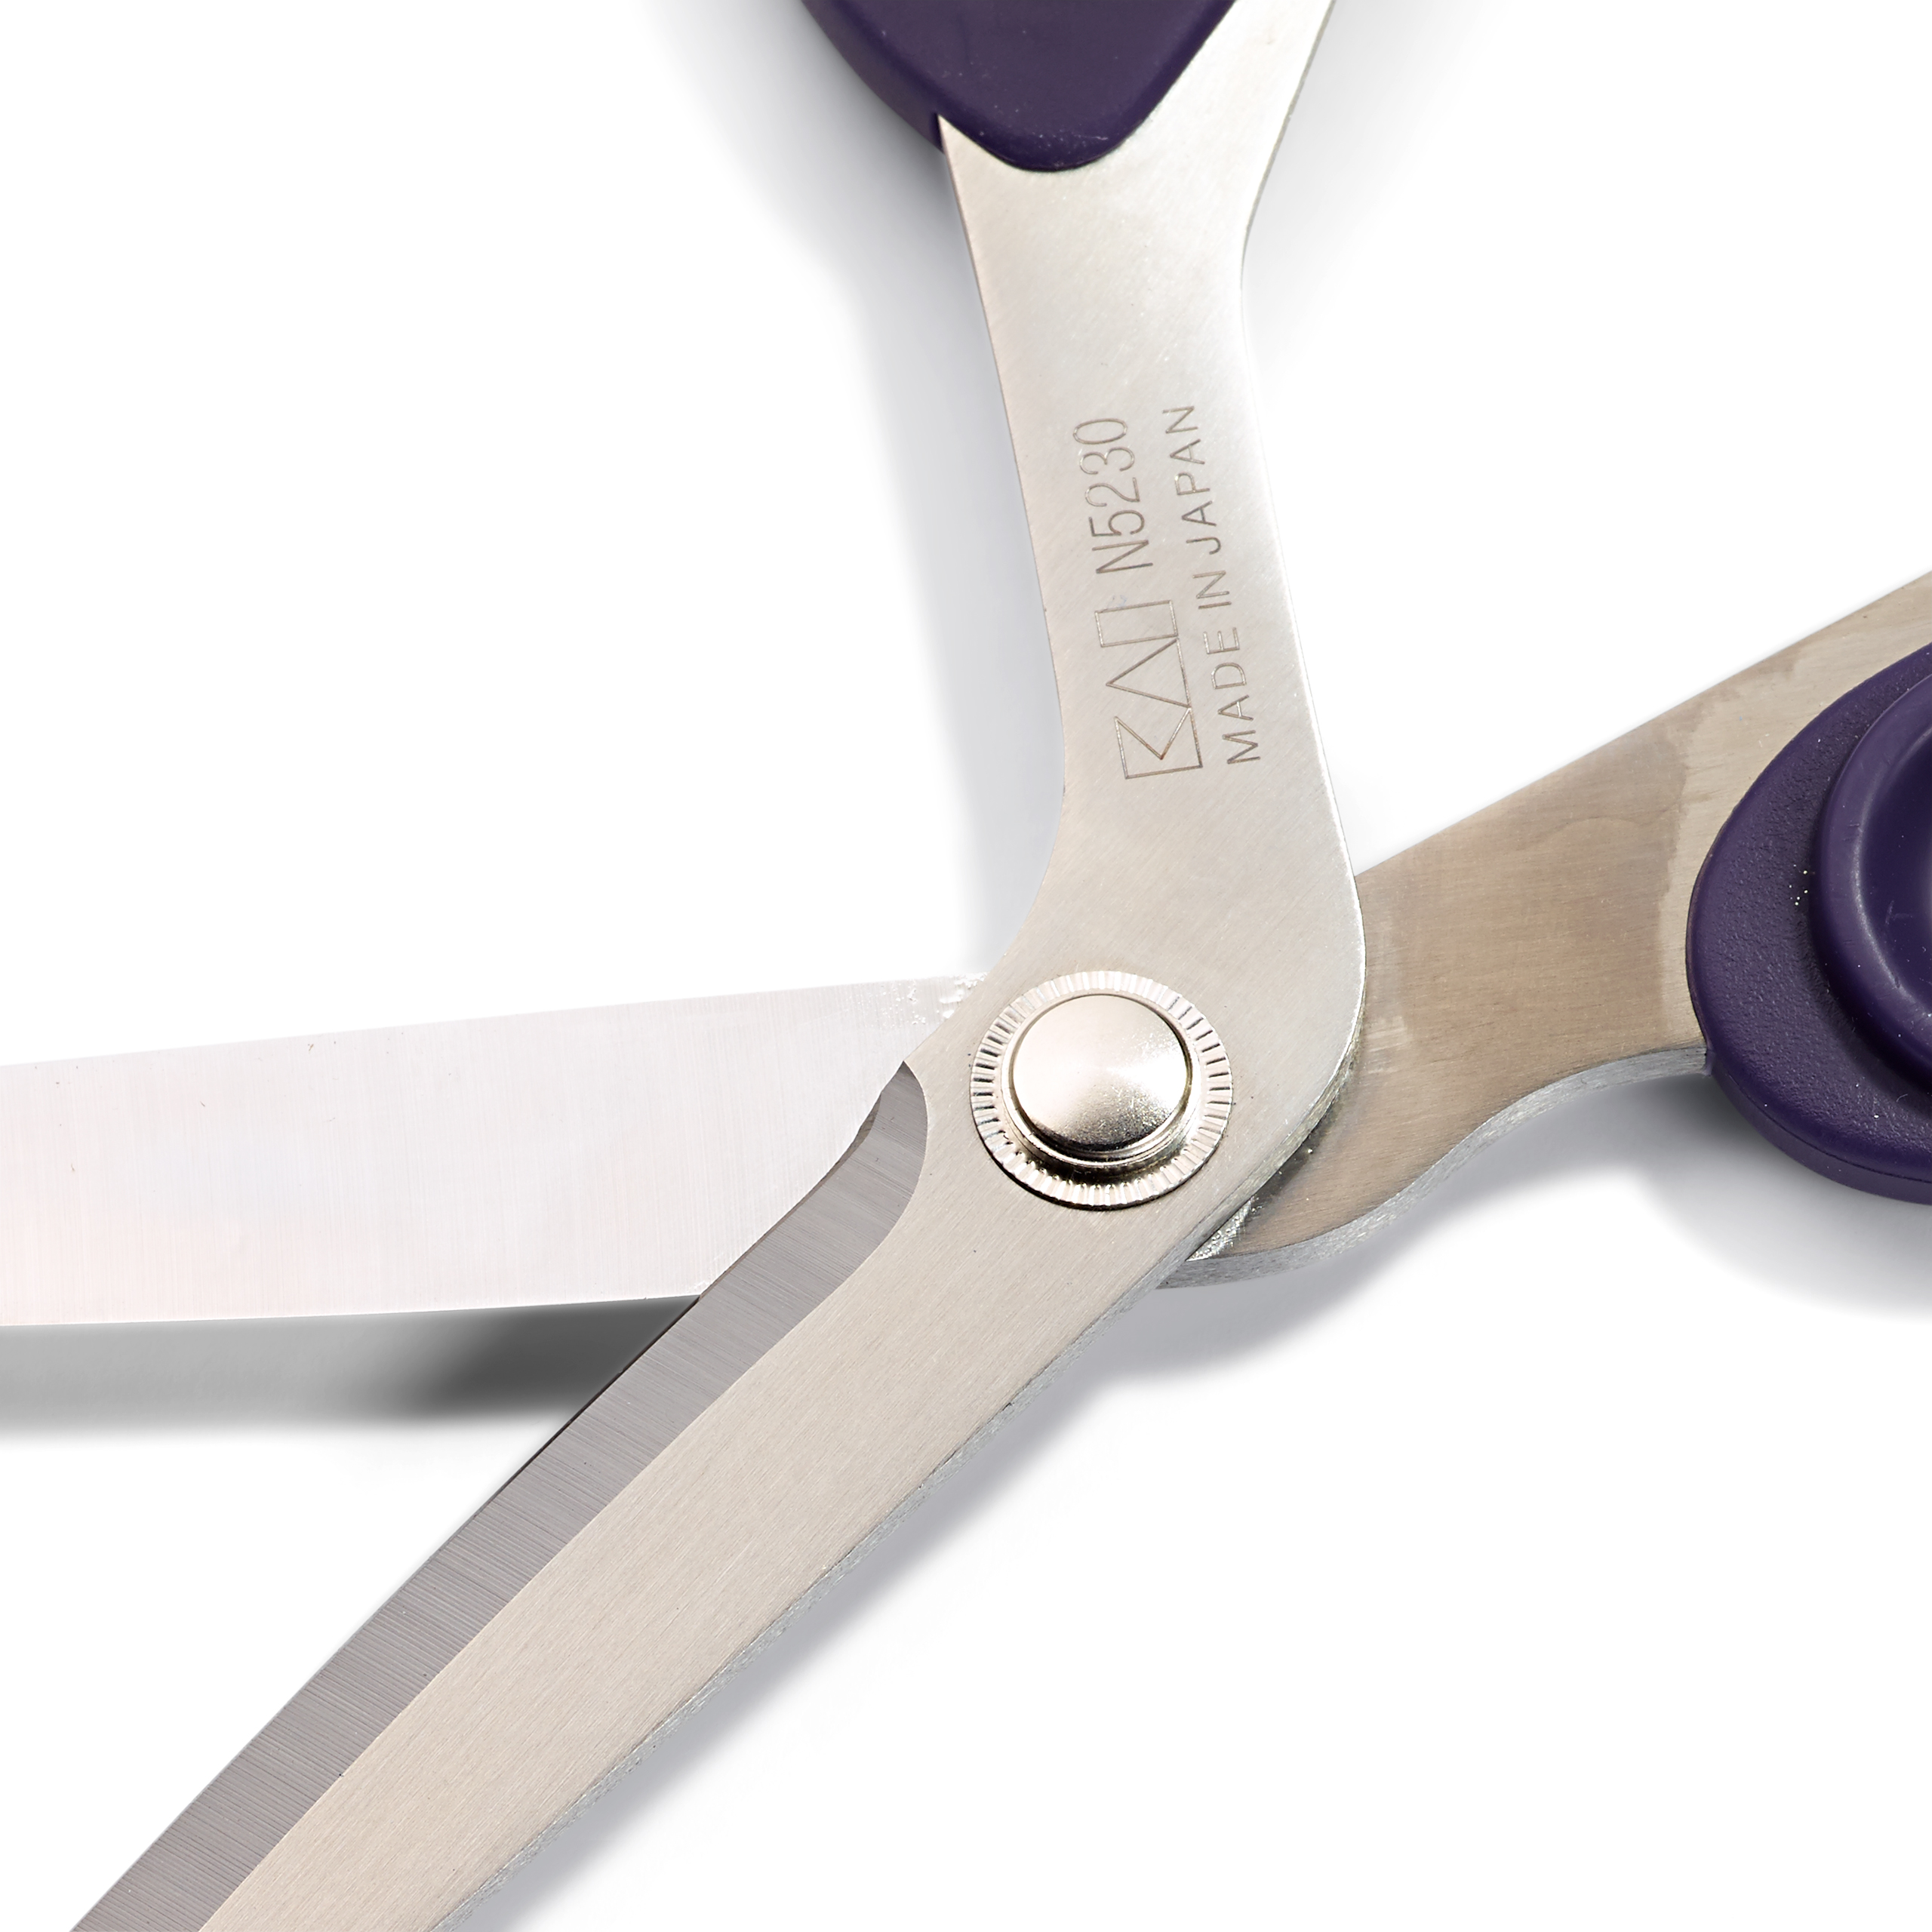 Ножницы для шитья Professional,Prym (Арт.611508),с микрозубчиками